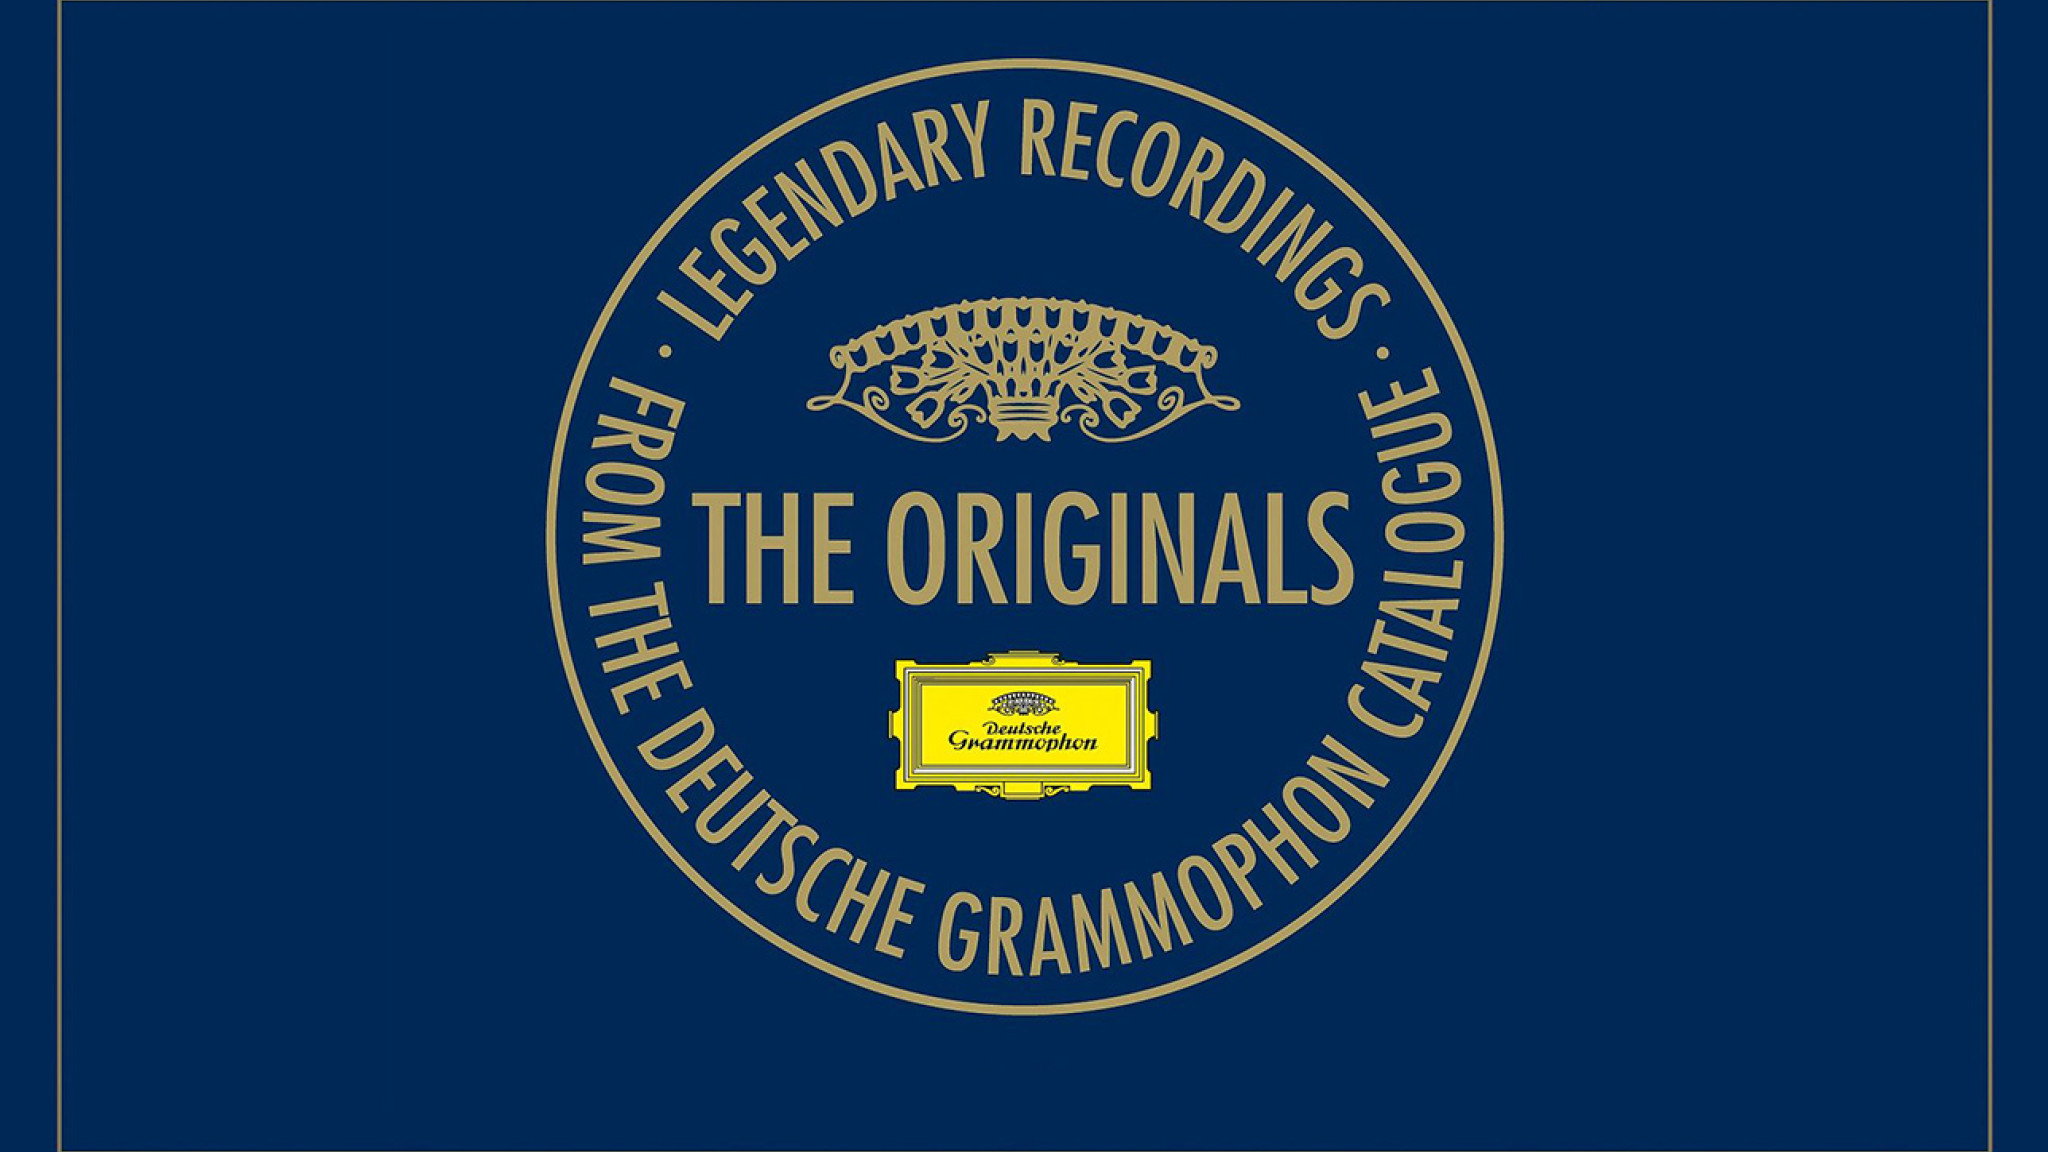 Atmosphärisches Erlebnis: Die Serie "The Originals" präsentiert legendäre Aufnahmen